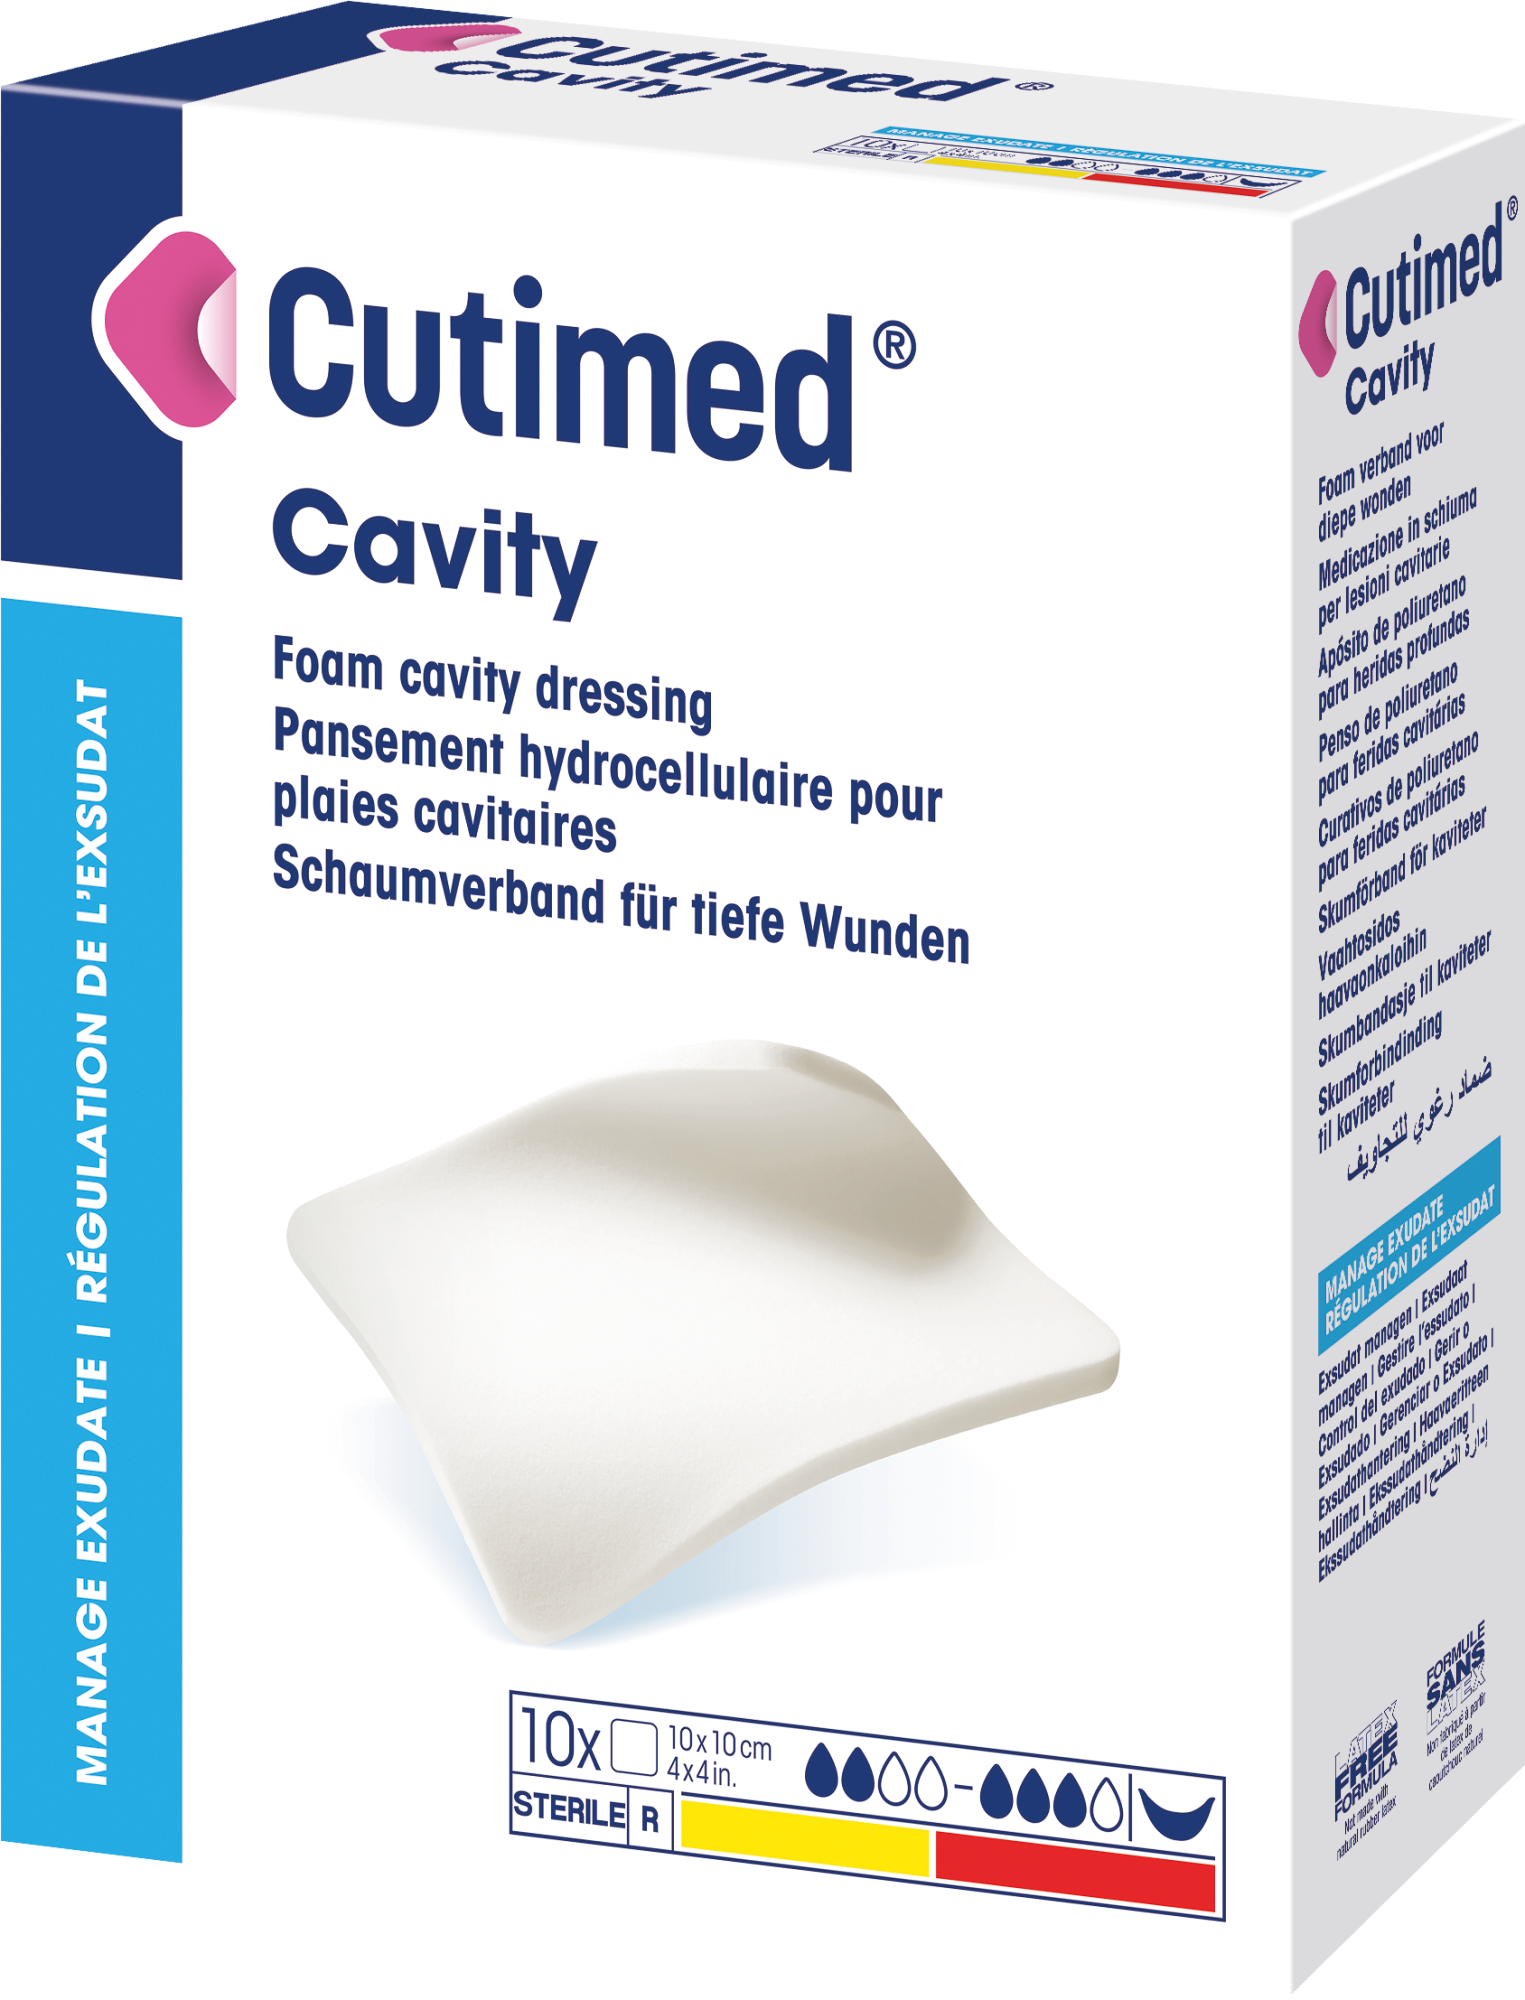 Immagine di una confezione di Cutimed® Cavity 